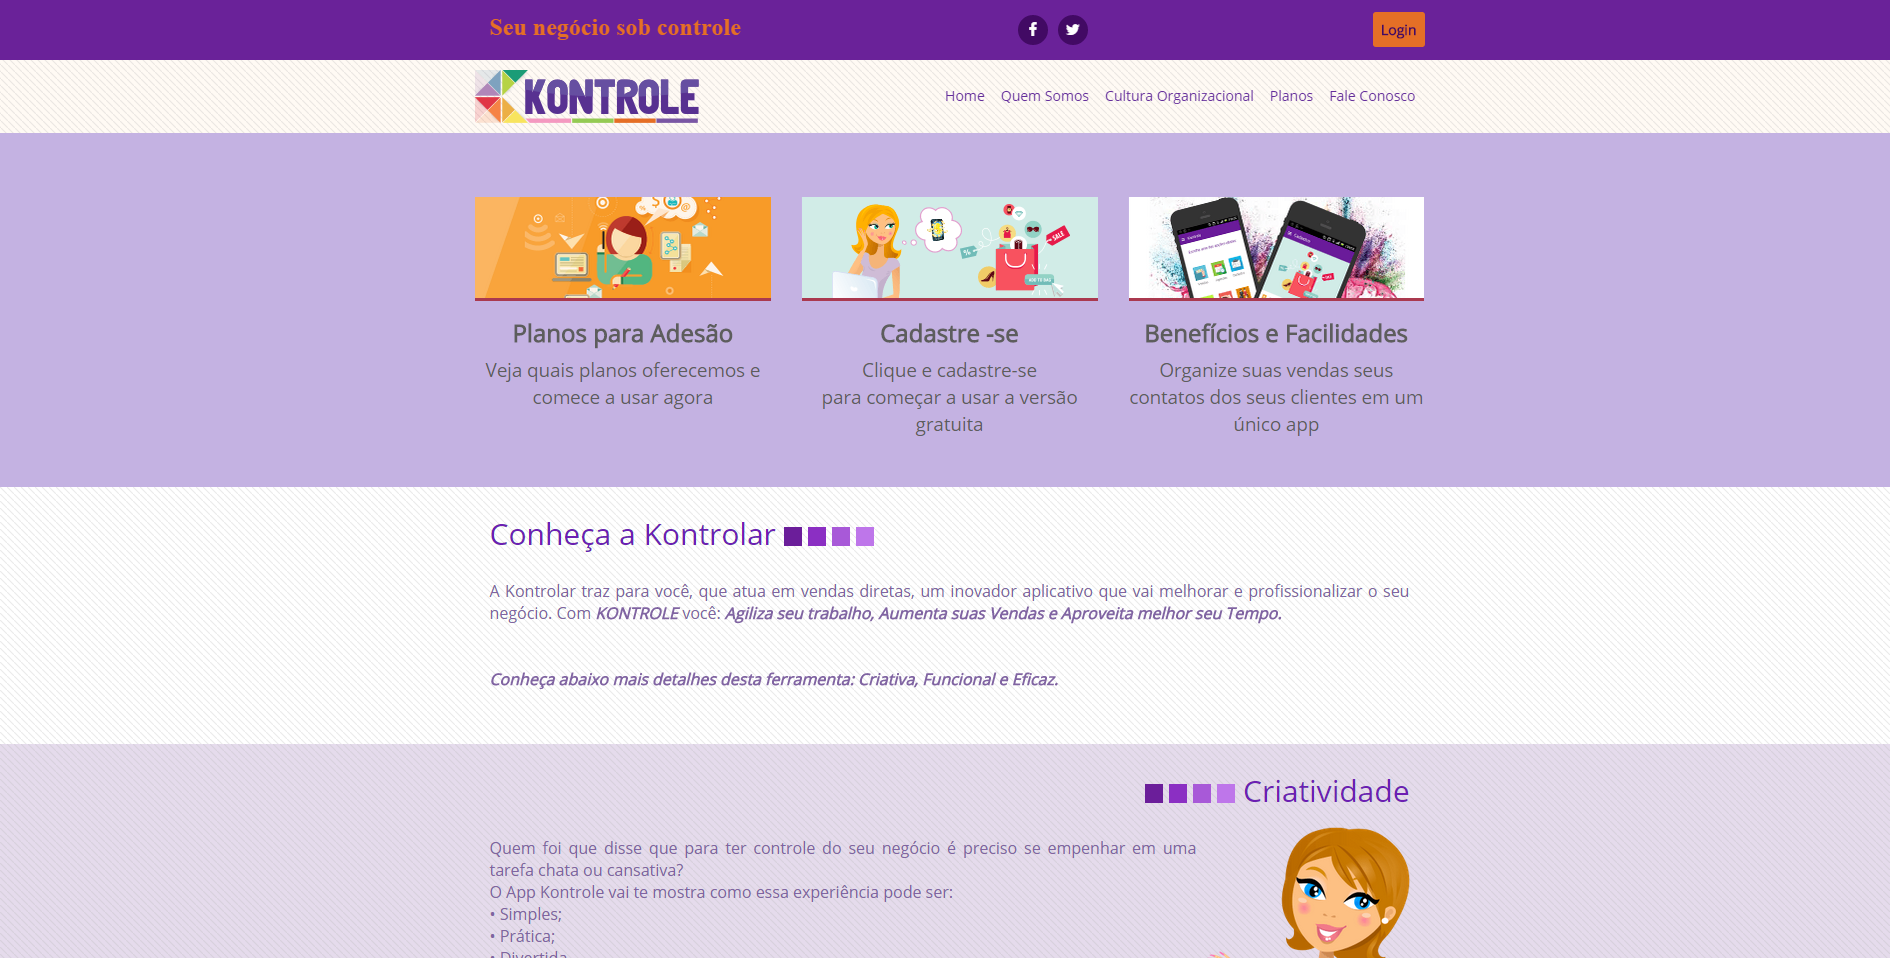 Bem vindo ao site www.appkontrole.com.br, para acessar seu painel primeiro clique em "Login".